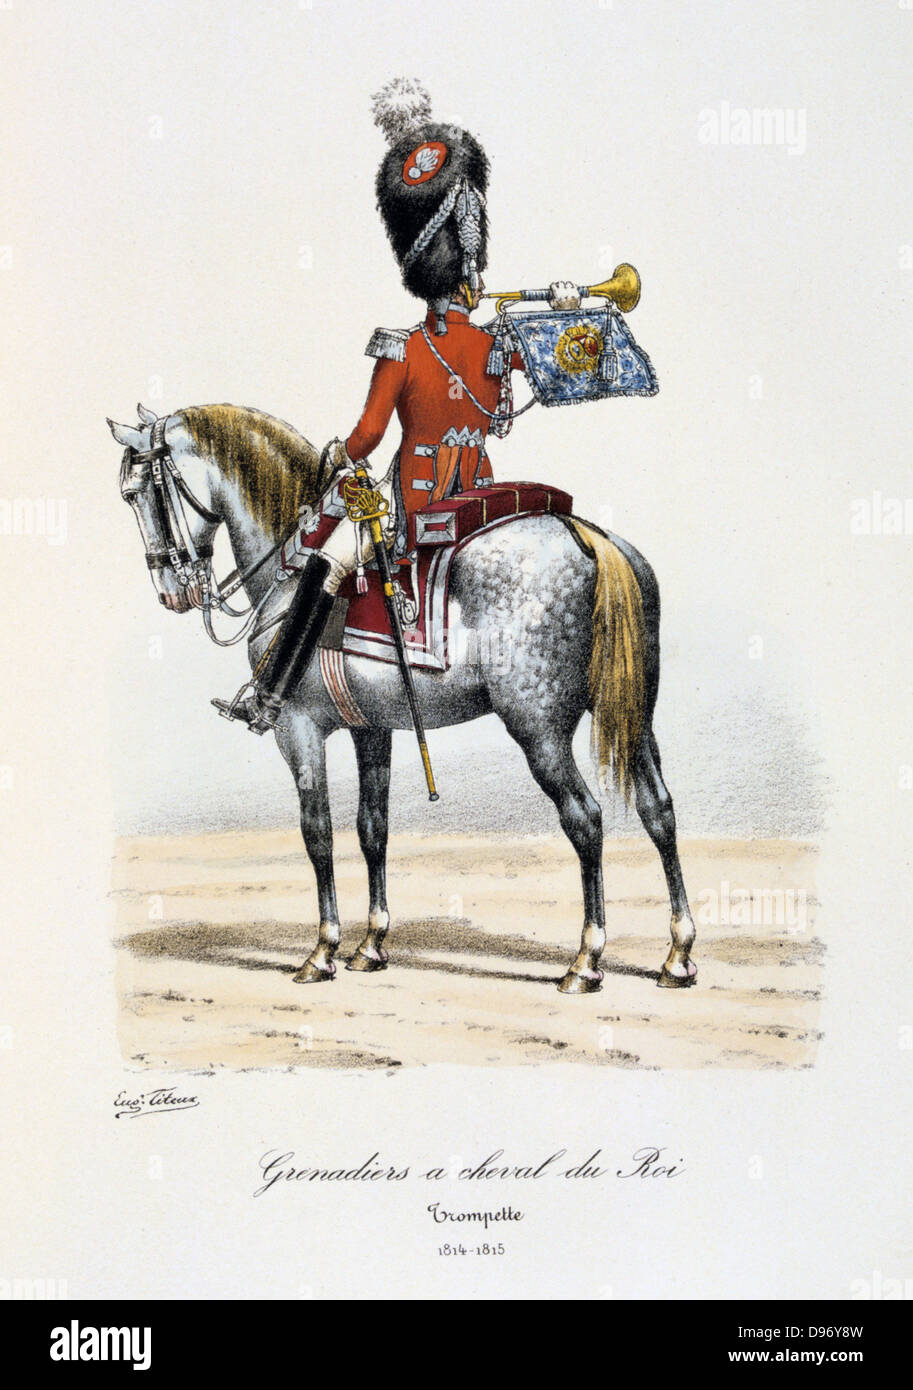 Trumpeter of the King's Mounted Grenadiers, 1814-1815. From 'Histoire de la maison militaire du Roi de 1814 a 1830' by Eugene Titeux, Paris, 1890. Stock Photo